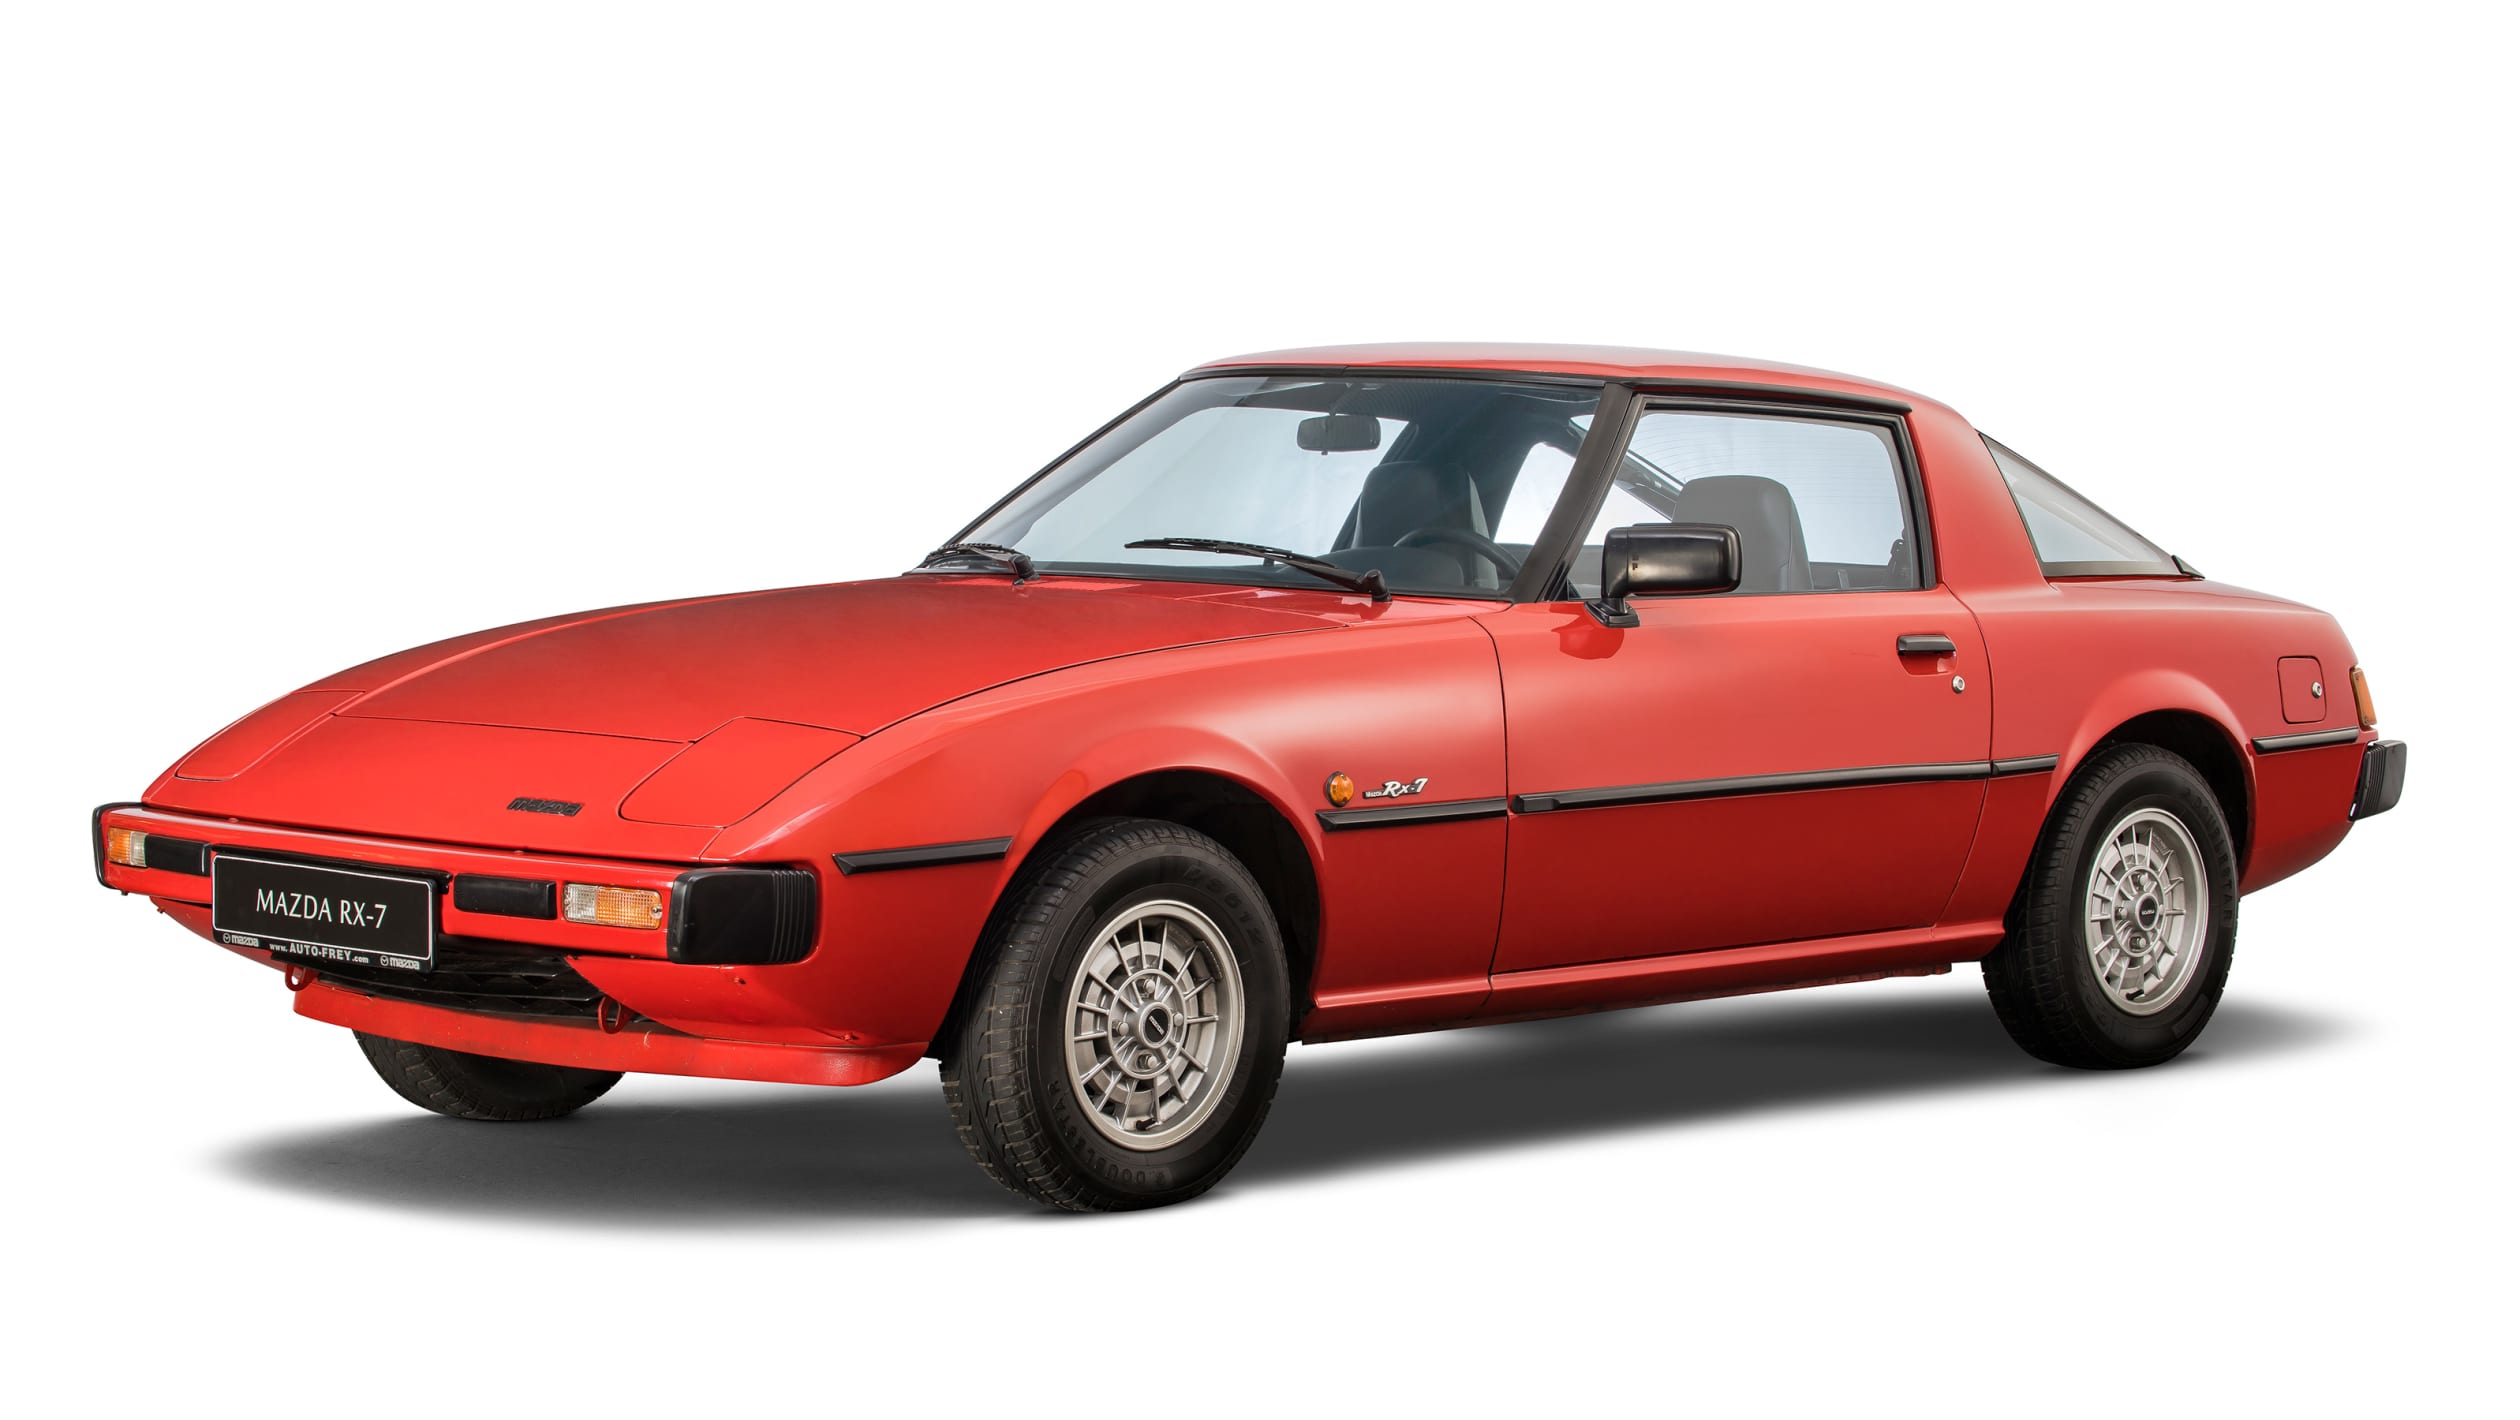 Mazda century feature 36